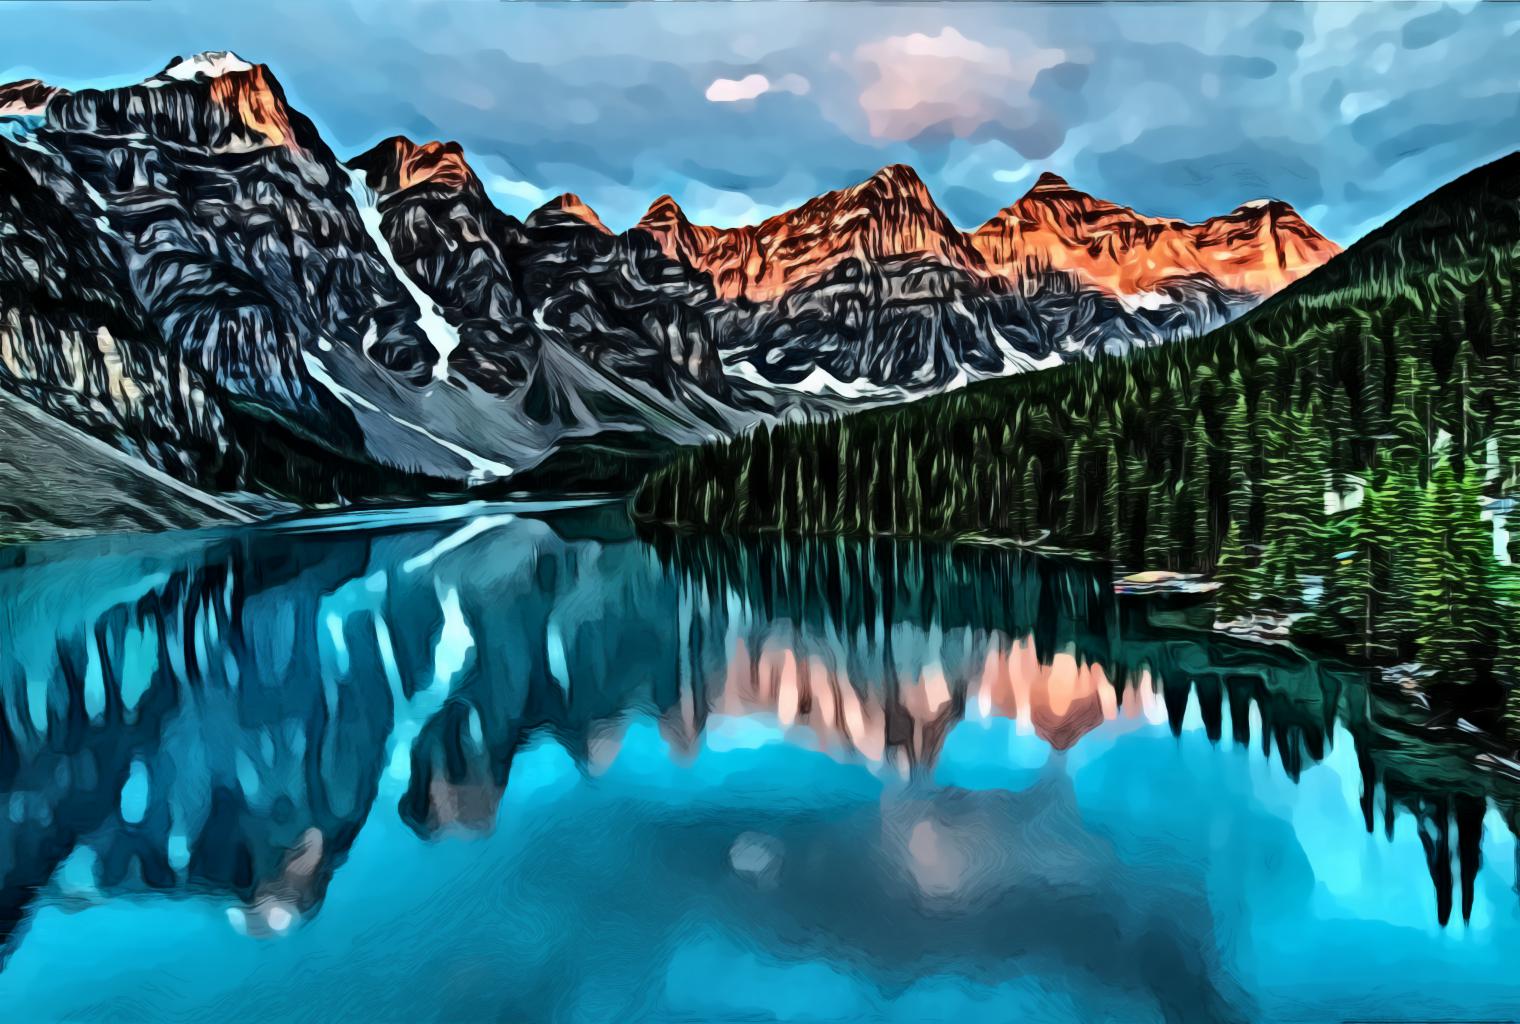 Lake and Mountain